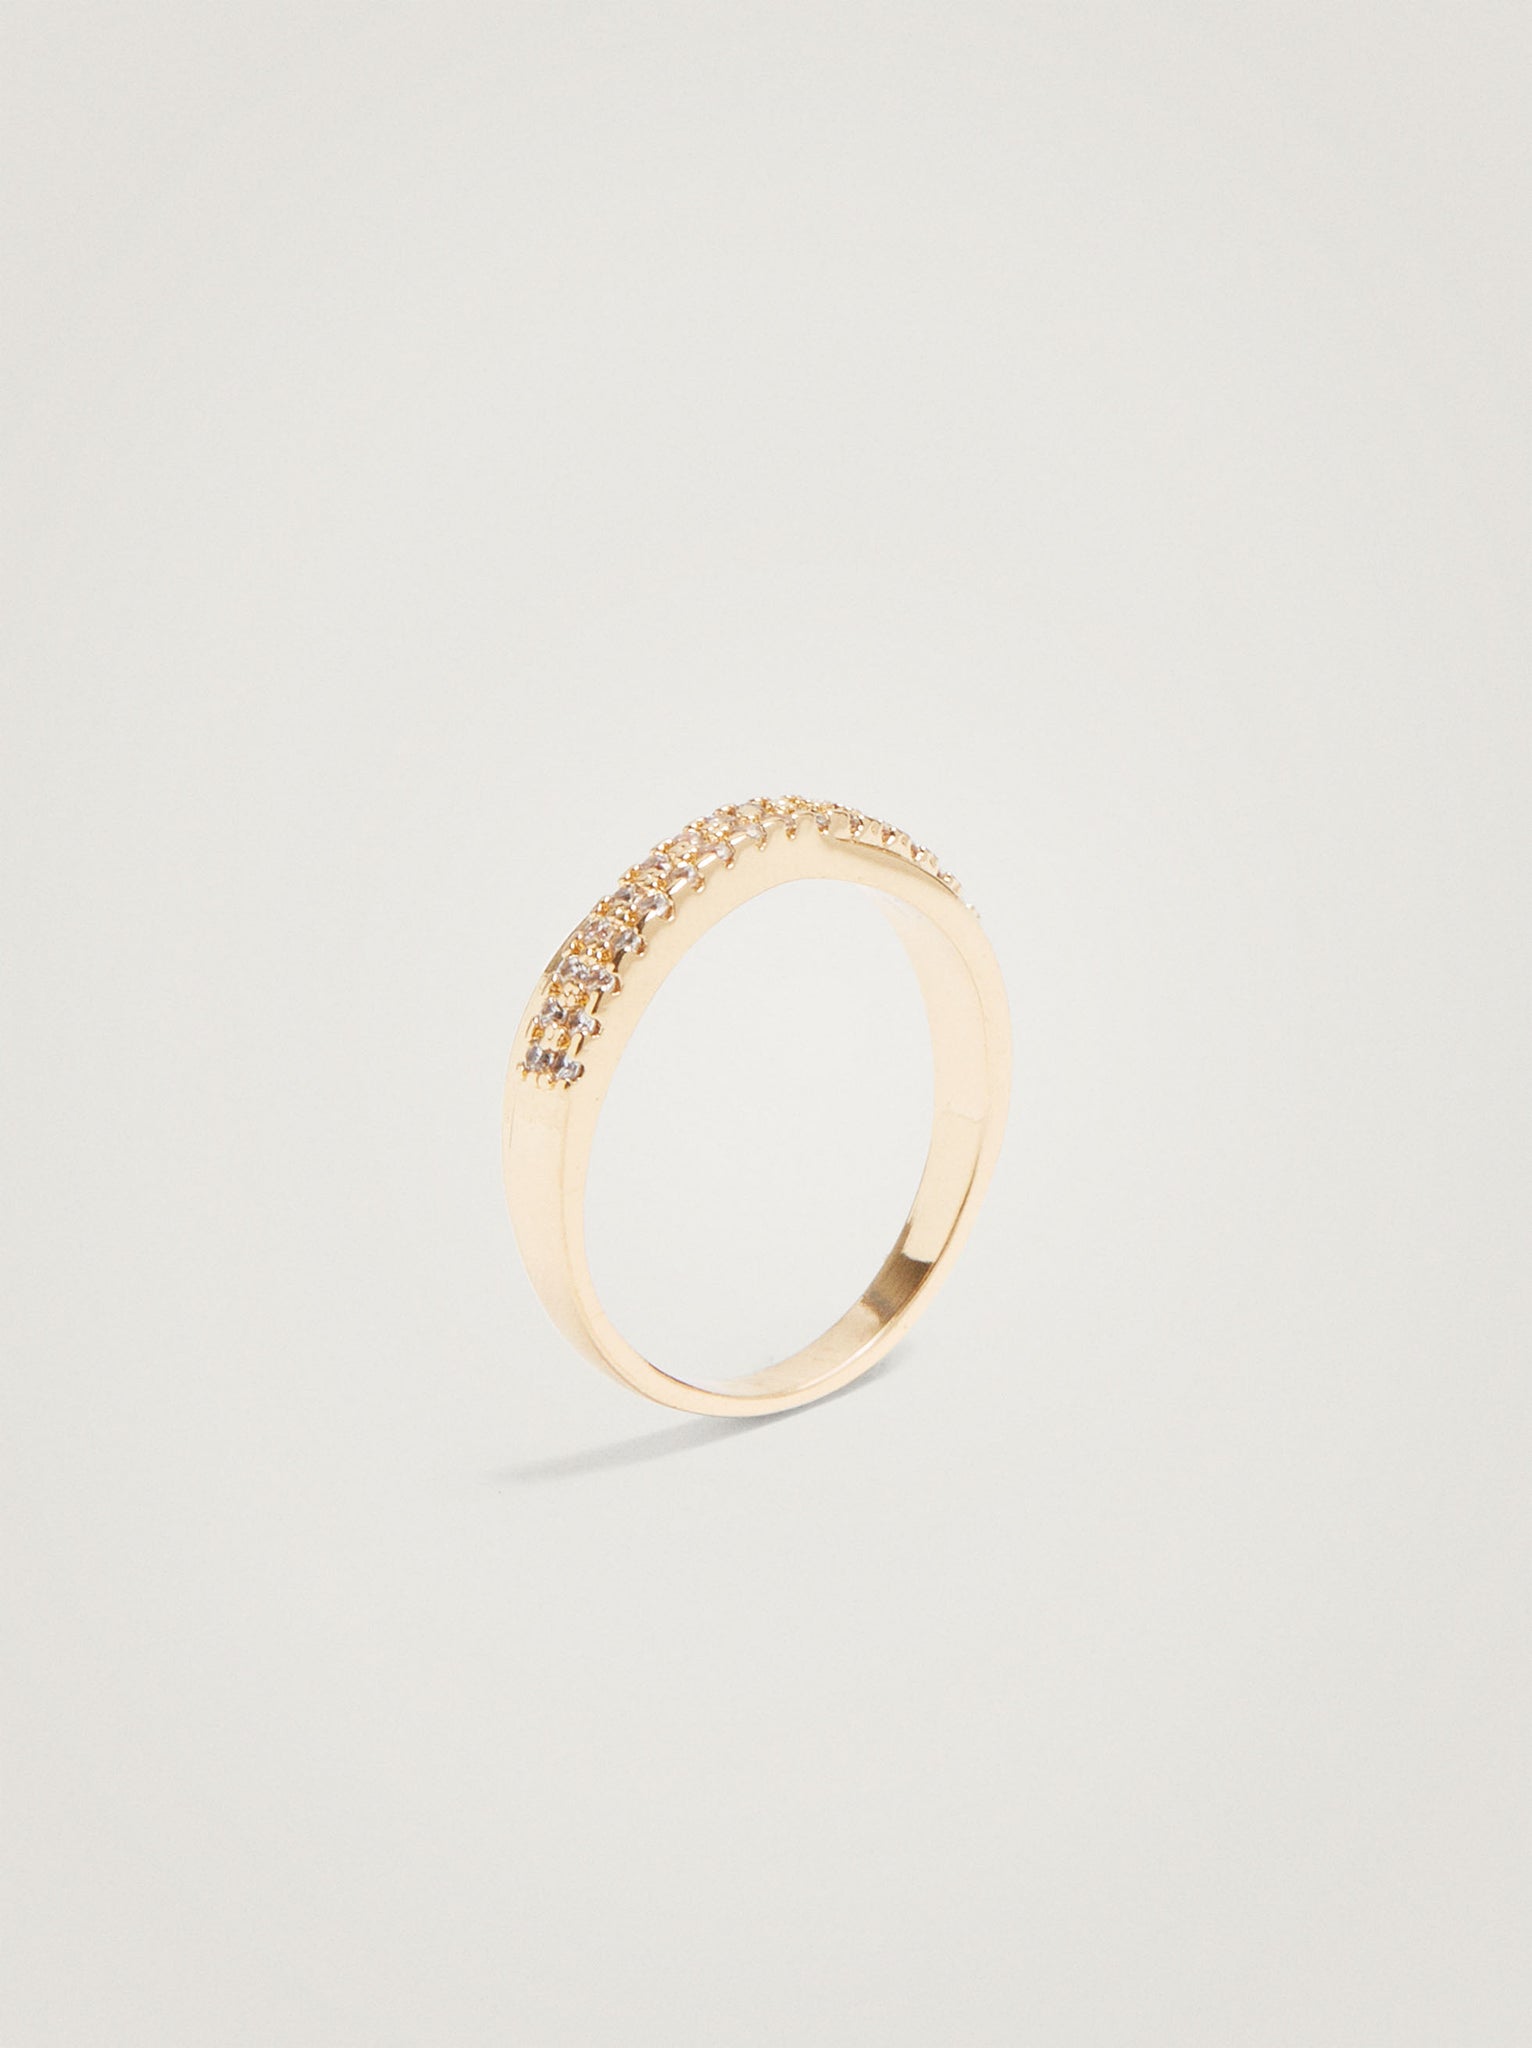 Golden Ring With Zirconia